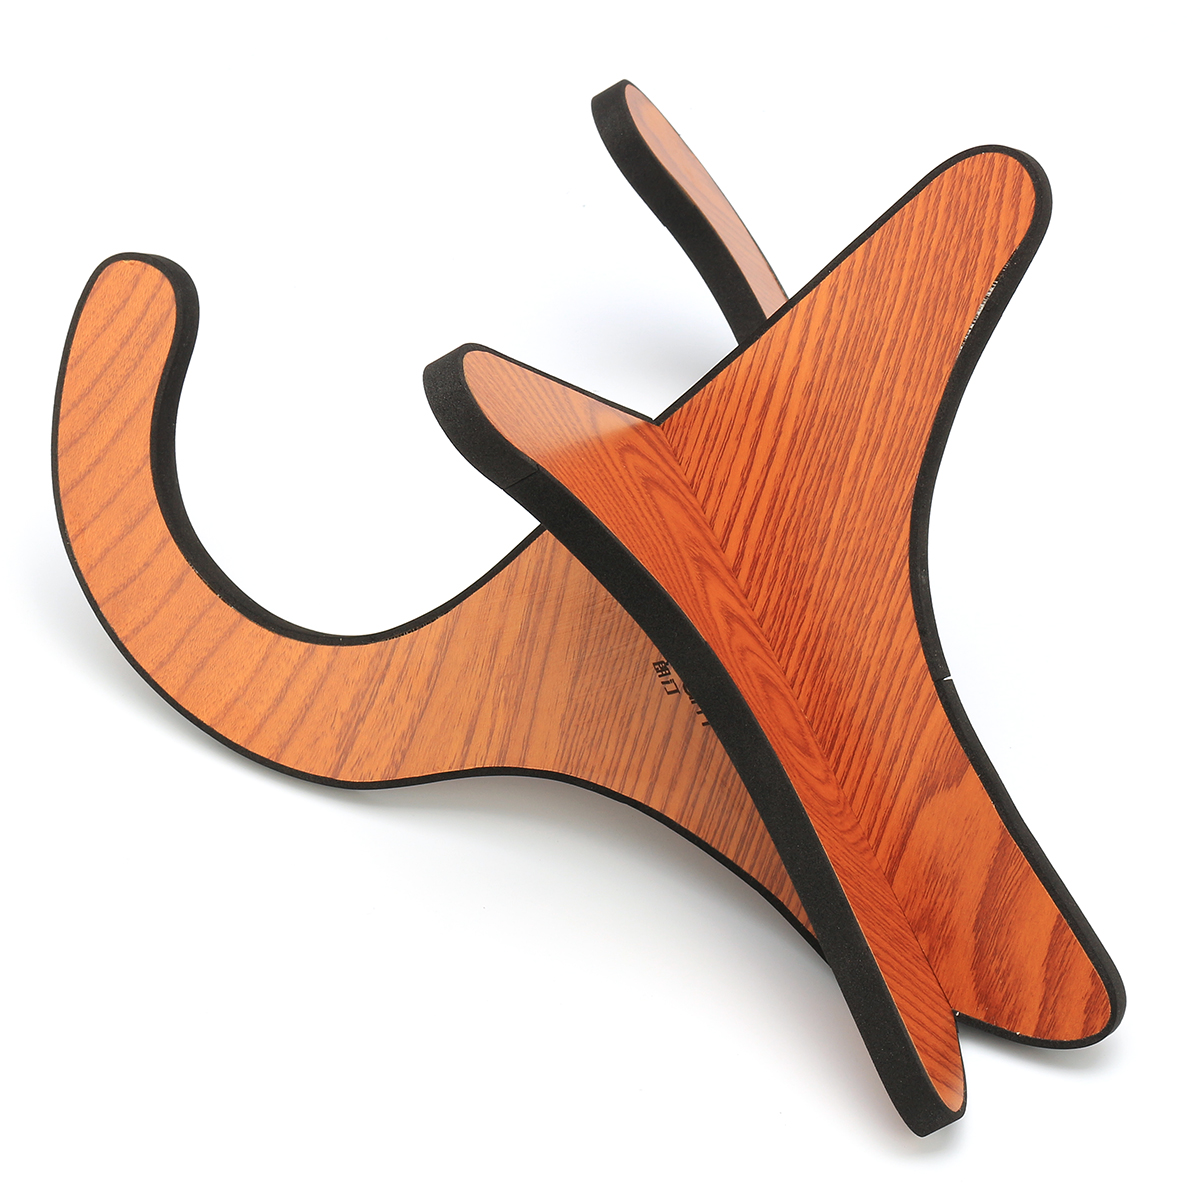 Multifunctional-Wooden-Guitar-Ukulele-Tablet-Holder-Desktop-Bracket-Stand-1876166-4